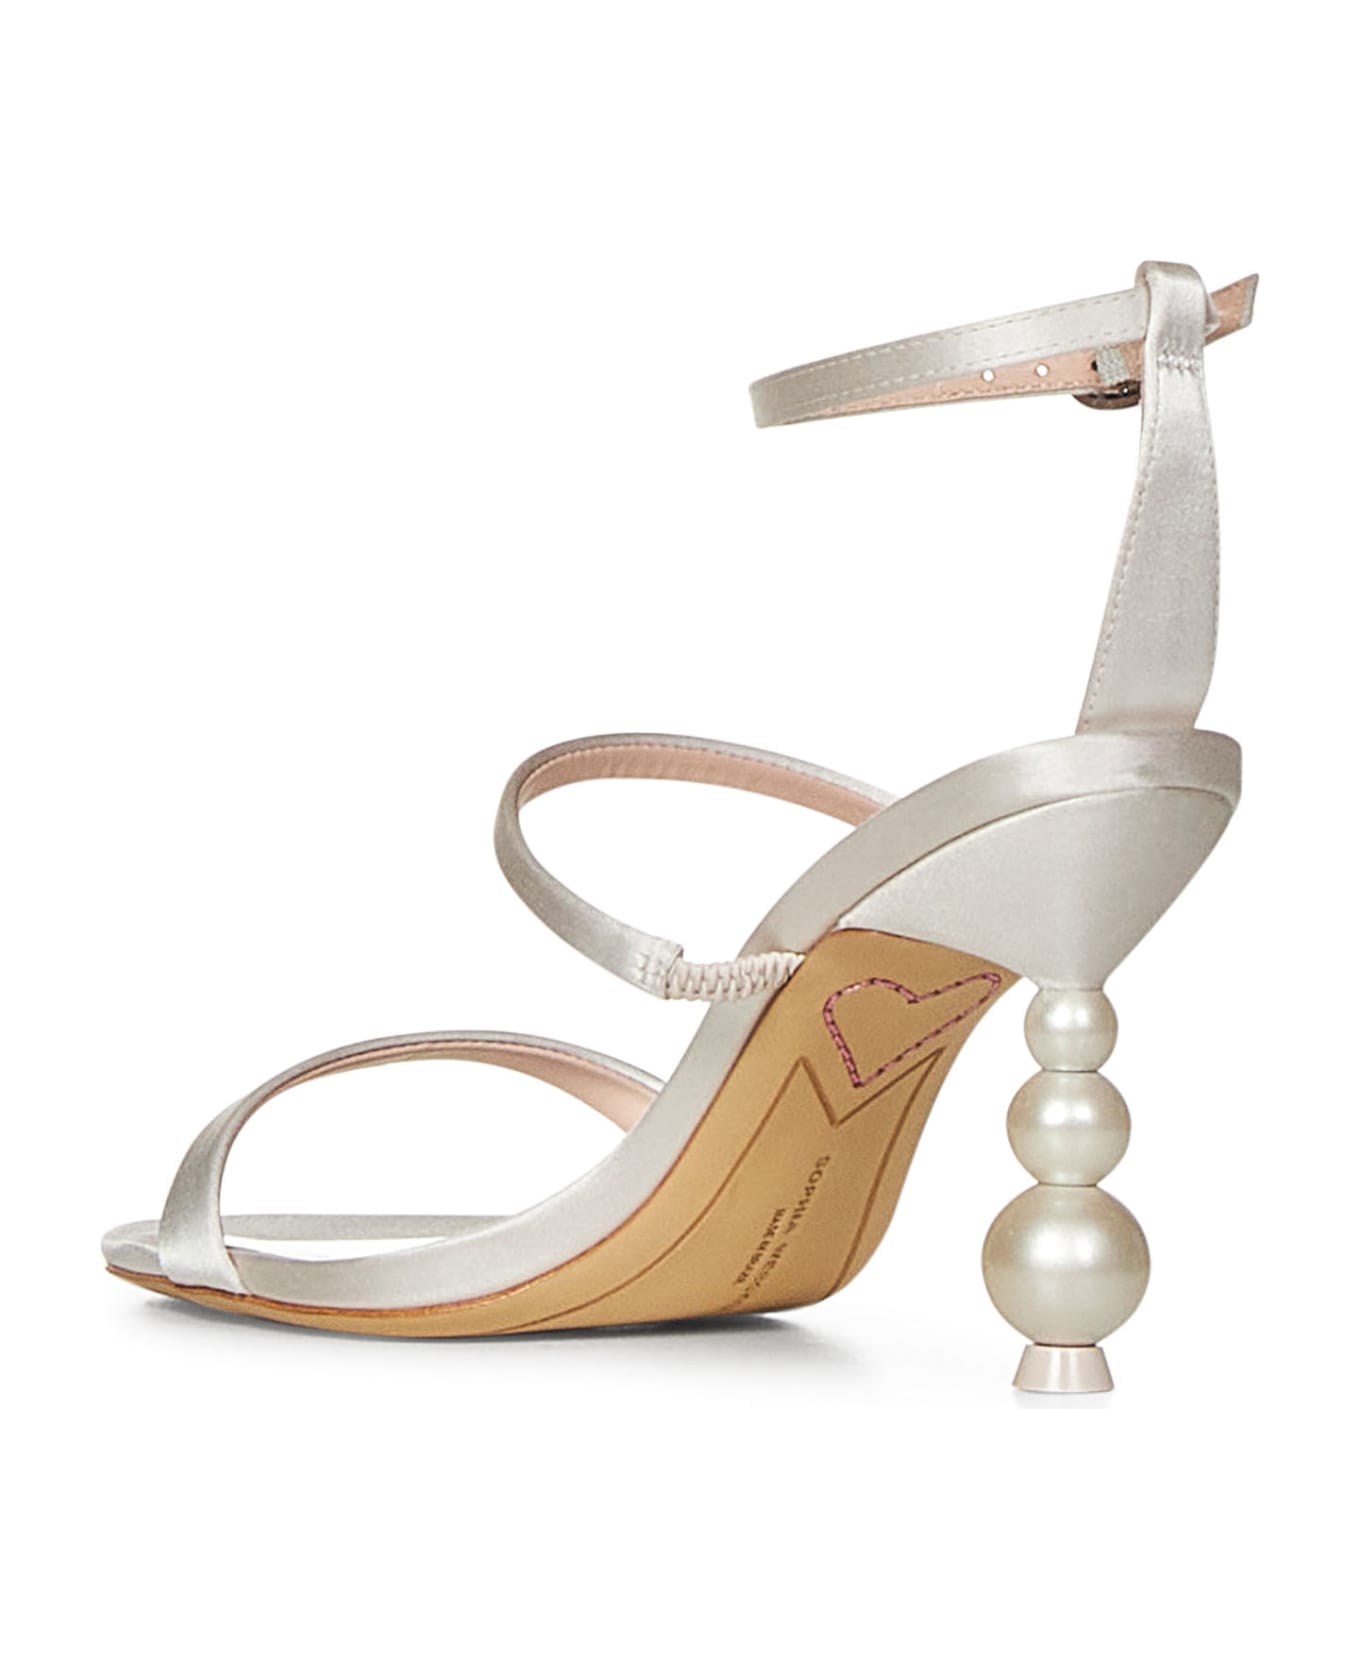 Sophia Webster Rosalind Sandals - Ivory